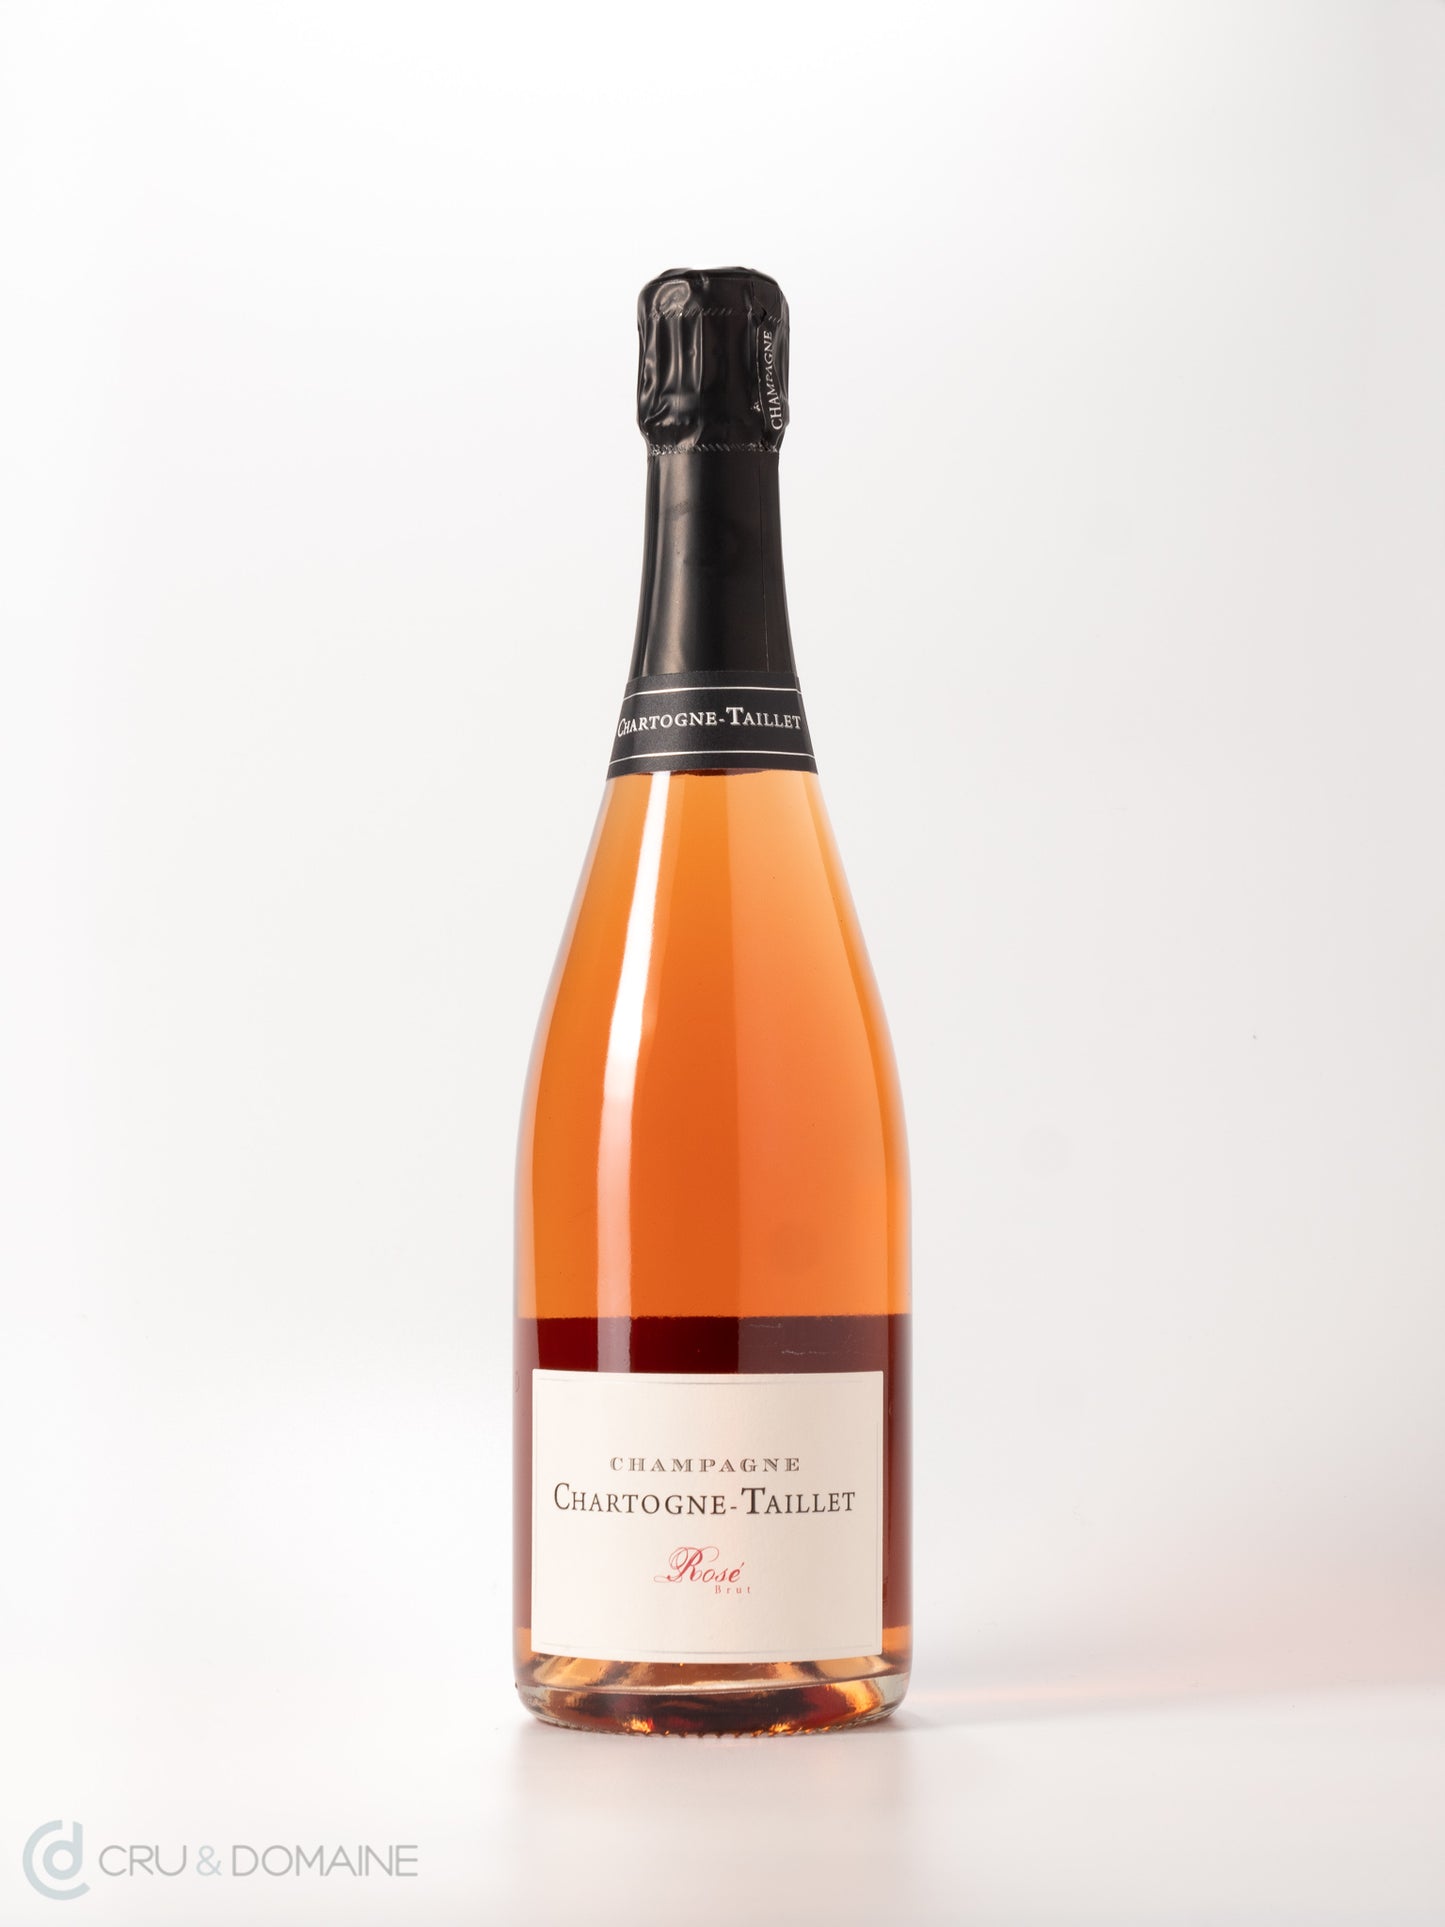 NV Chartogne-Taillet, Rosé, Brut, Champagne, France